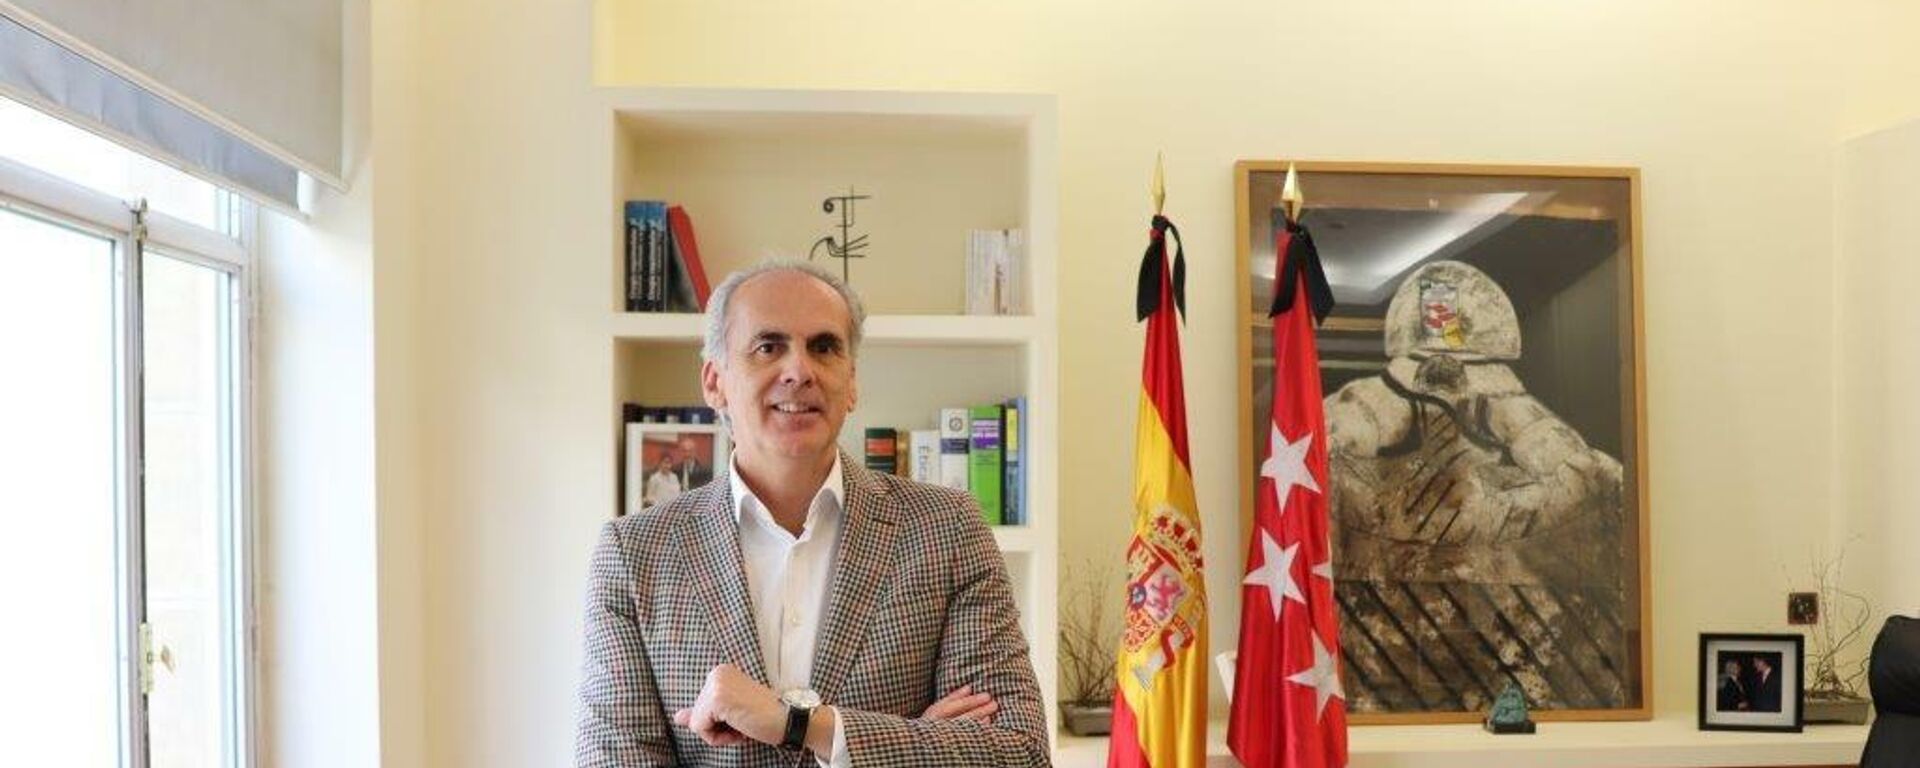 Enrique Ruíz Escudero, Consejero de Sanidad de la Comunidad de Madrid y número dos en las listas del PP para las elecciones del 4 de mayo - Sputnik Mundo, 1920, 20.04.2021